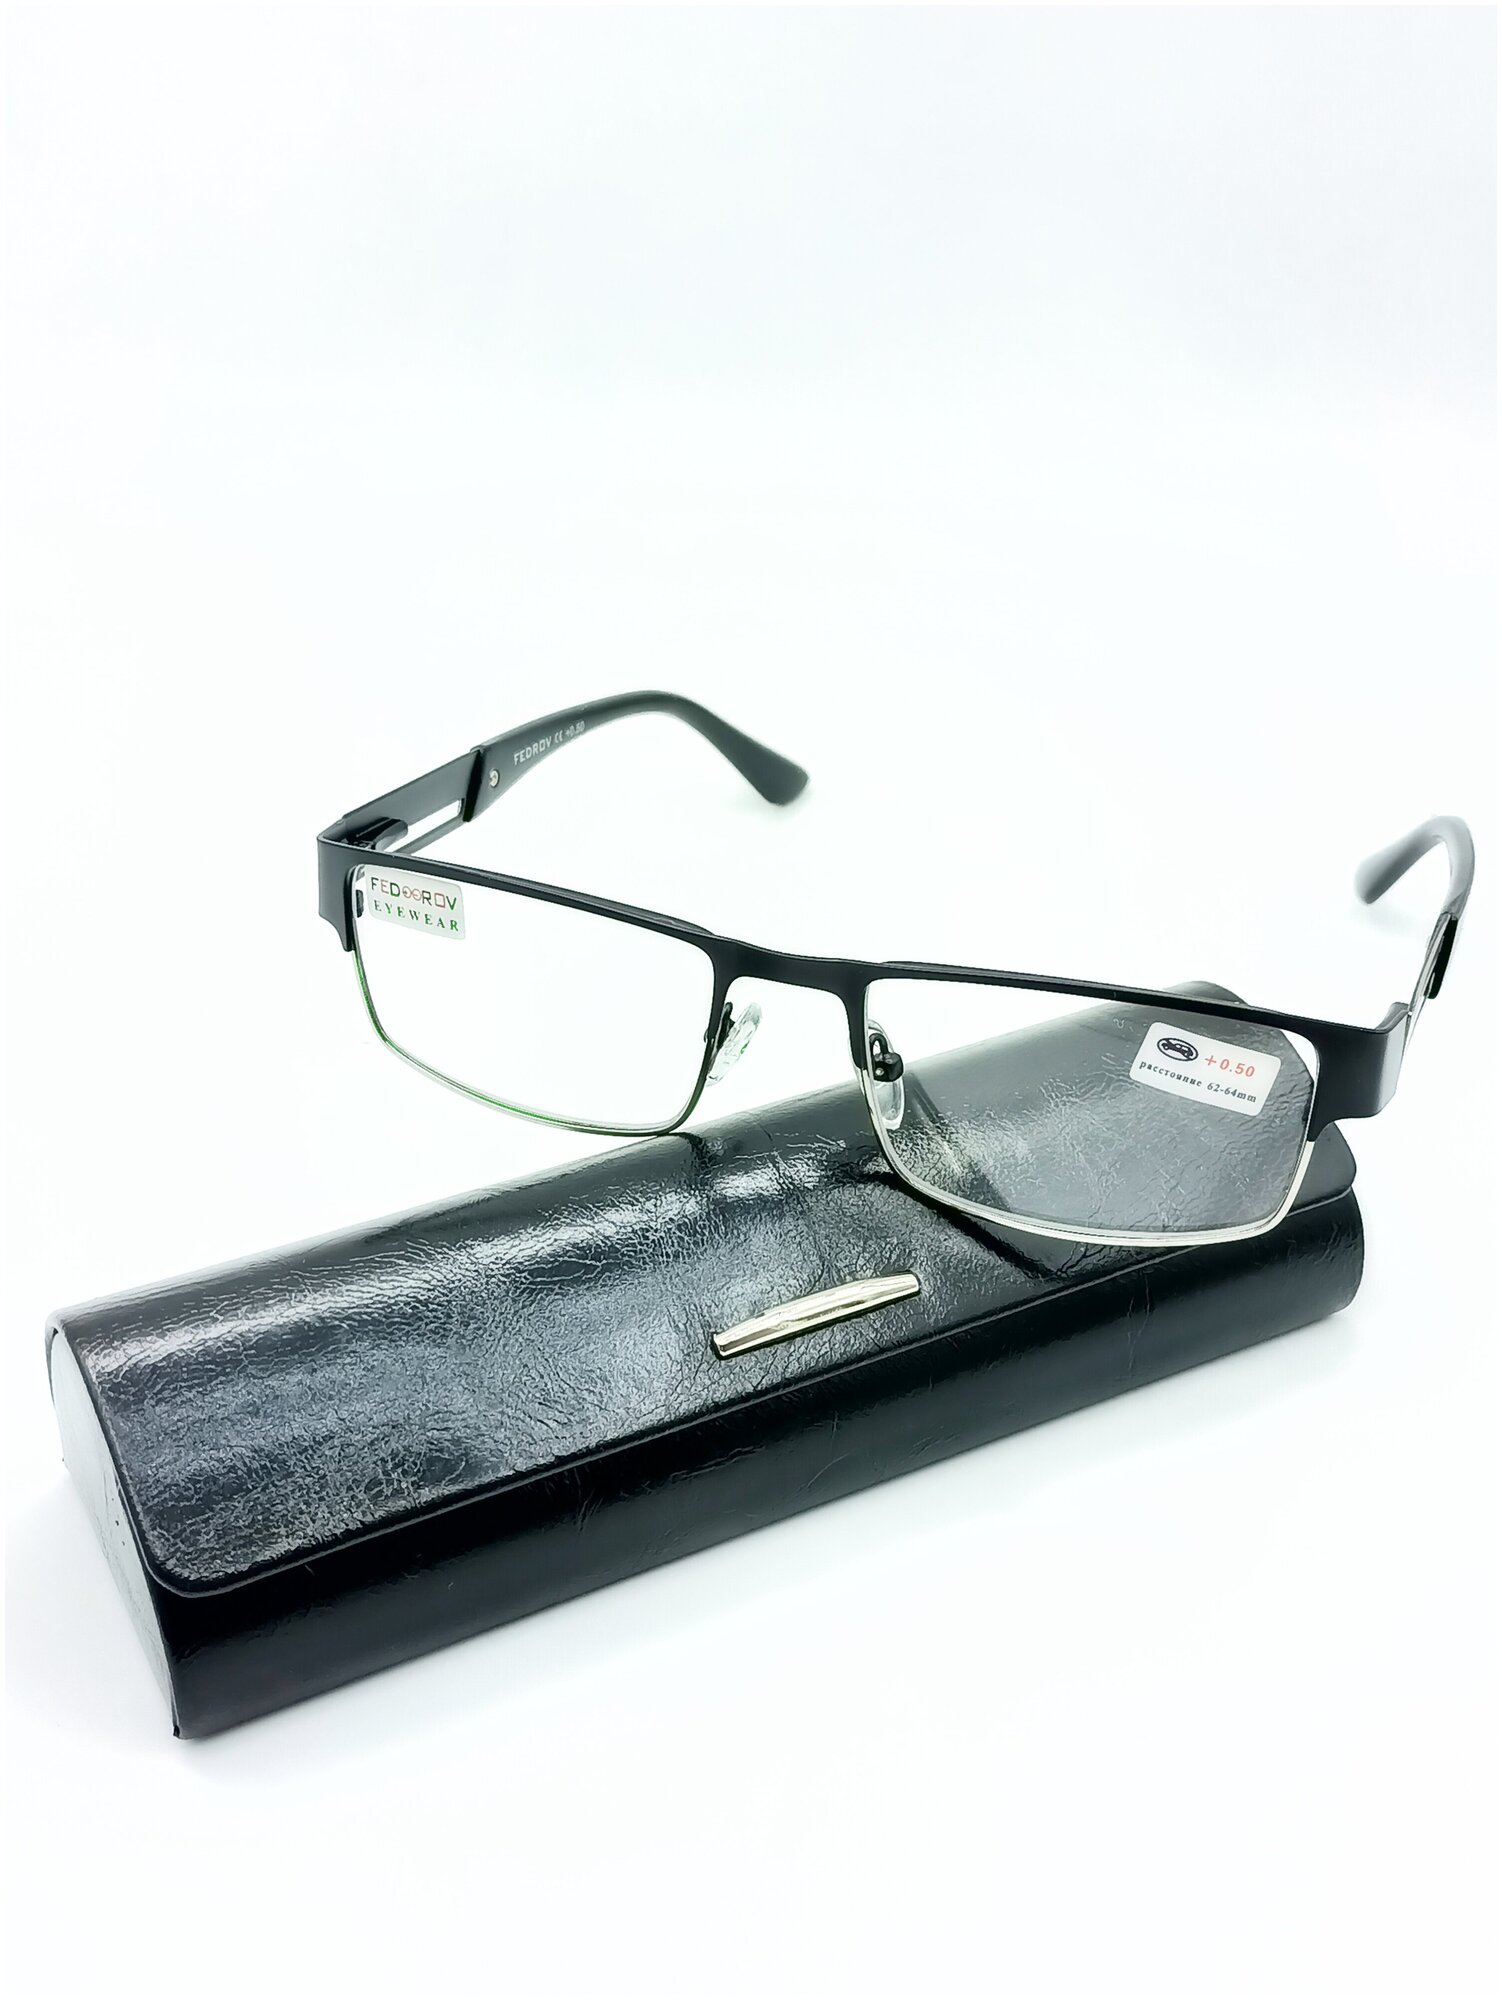 Готовые очки от зрения Fedrov ободковые цвет оправы черный +2.00 с футляром